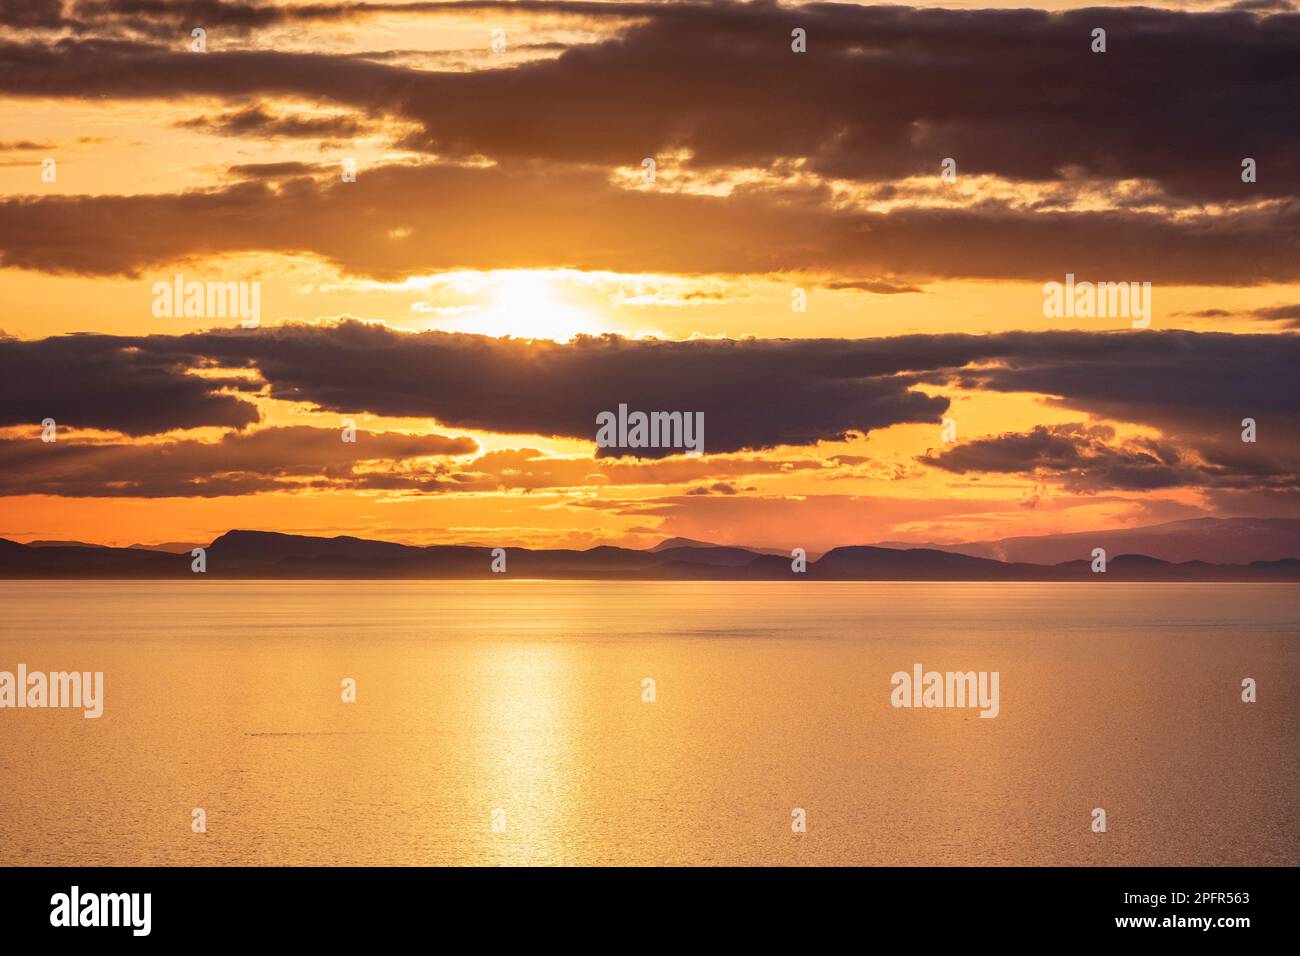 Sonnenuntergang am Point Whitethorn, Washington State, USA – Blick nach Westen zu den San Juan Islands in British Columbia, Kanada Stockfoto